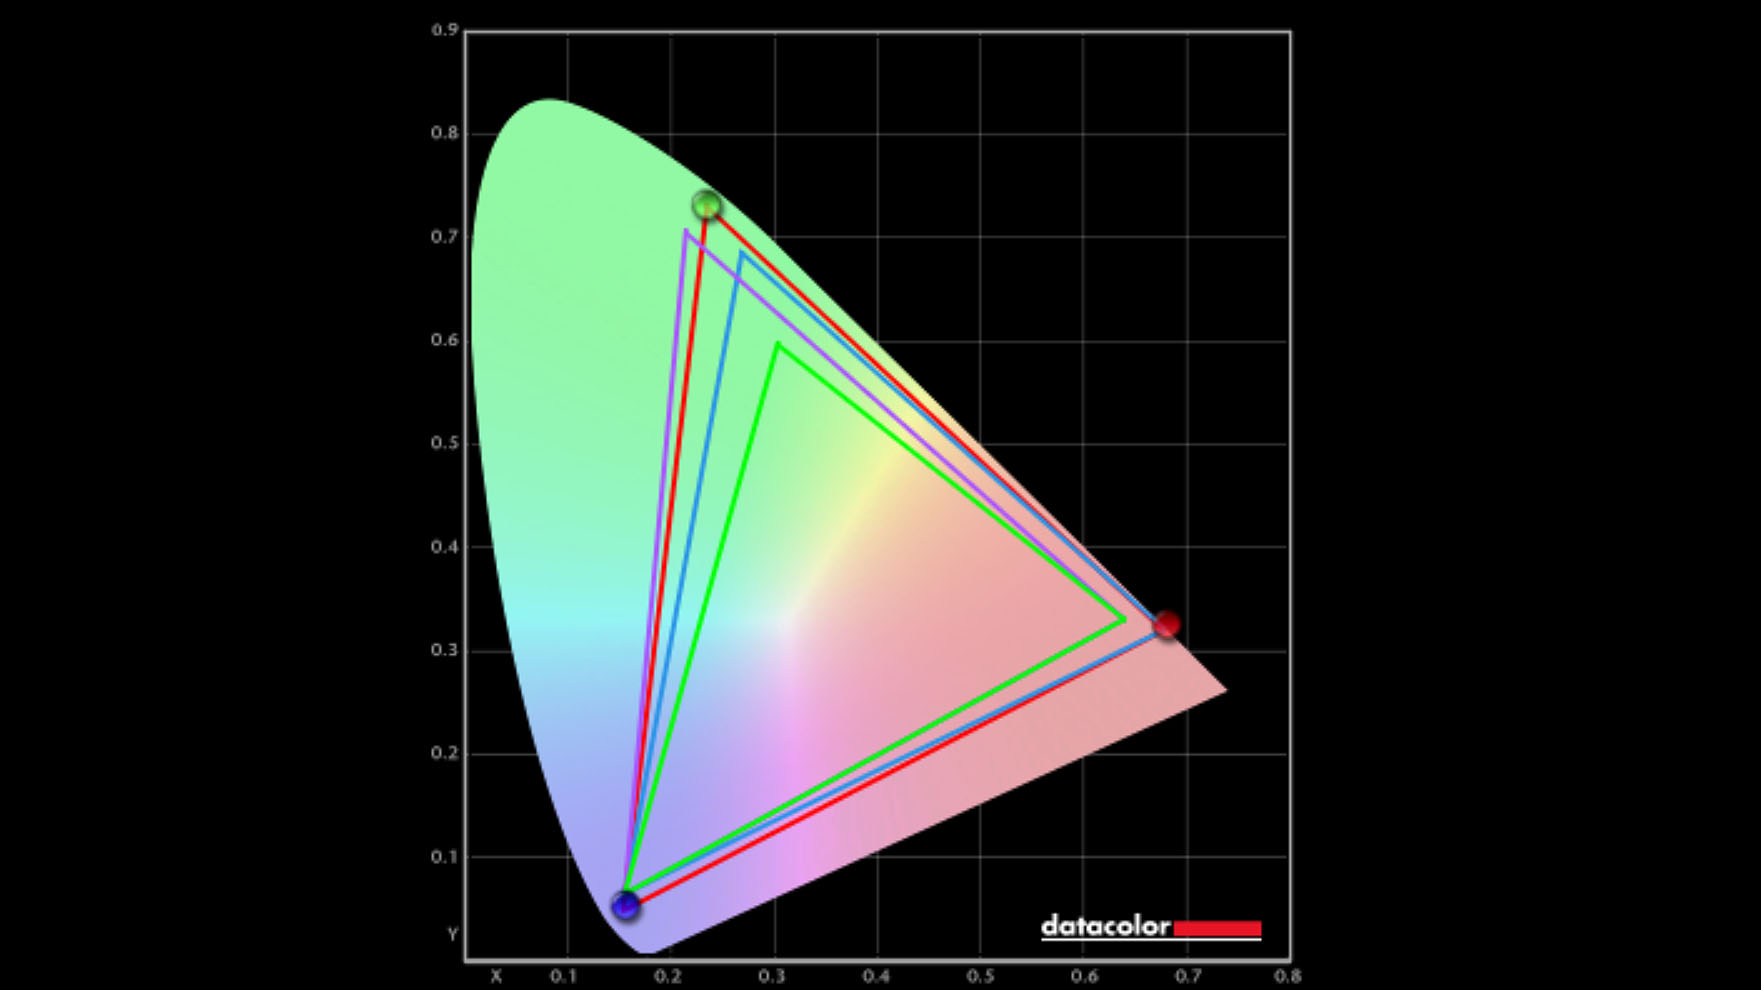 Dell XPS 15 (9530) colorimeter results.